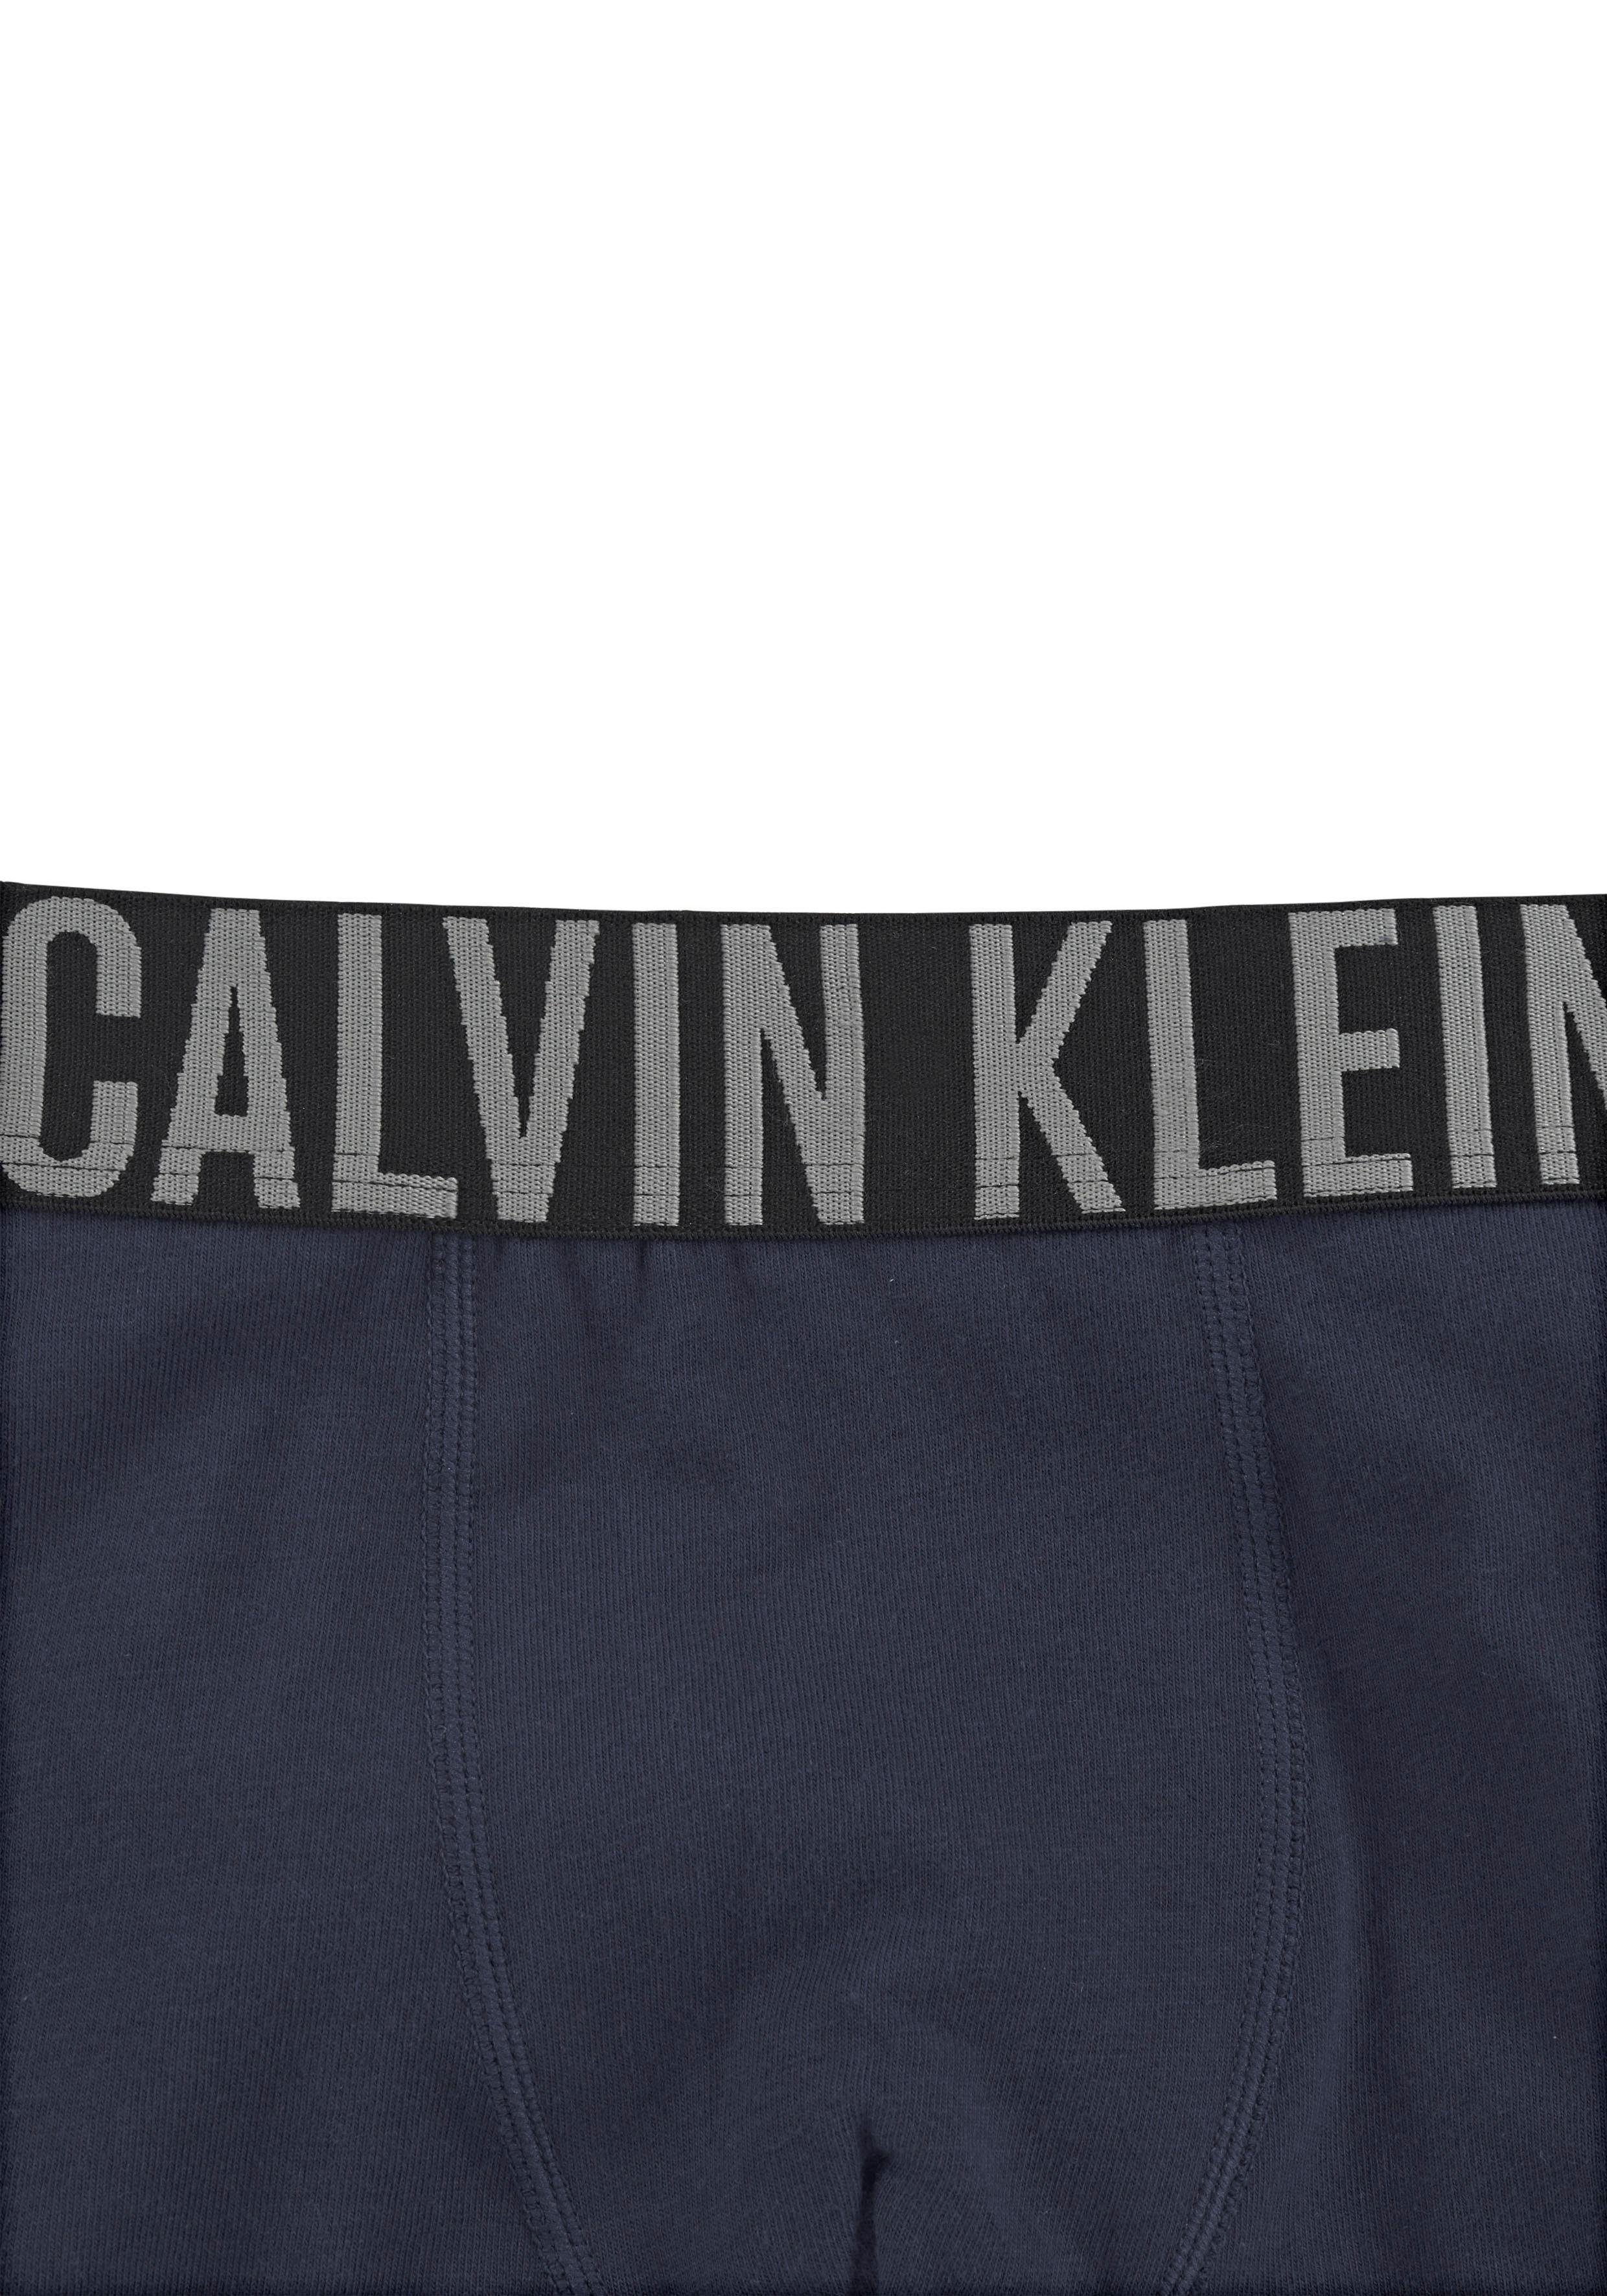 Calvin Klein Underwear Trunk Kinder Kids Junior (2-St) Power Intenese grau-meliert, MiniMe navy